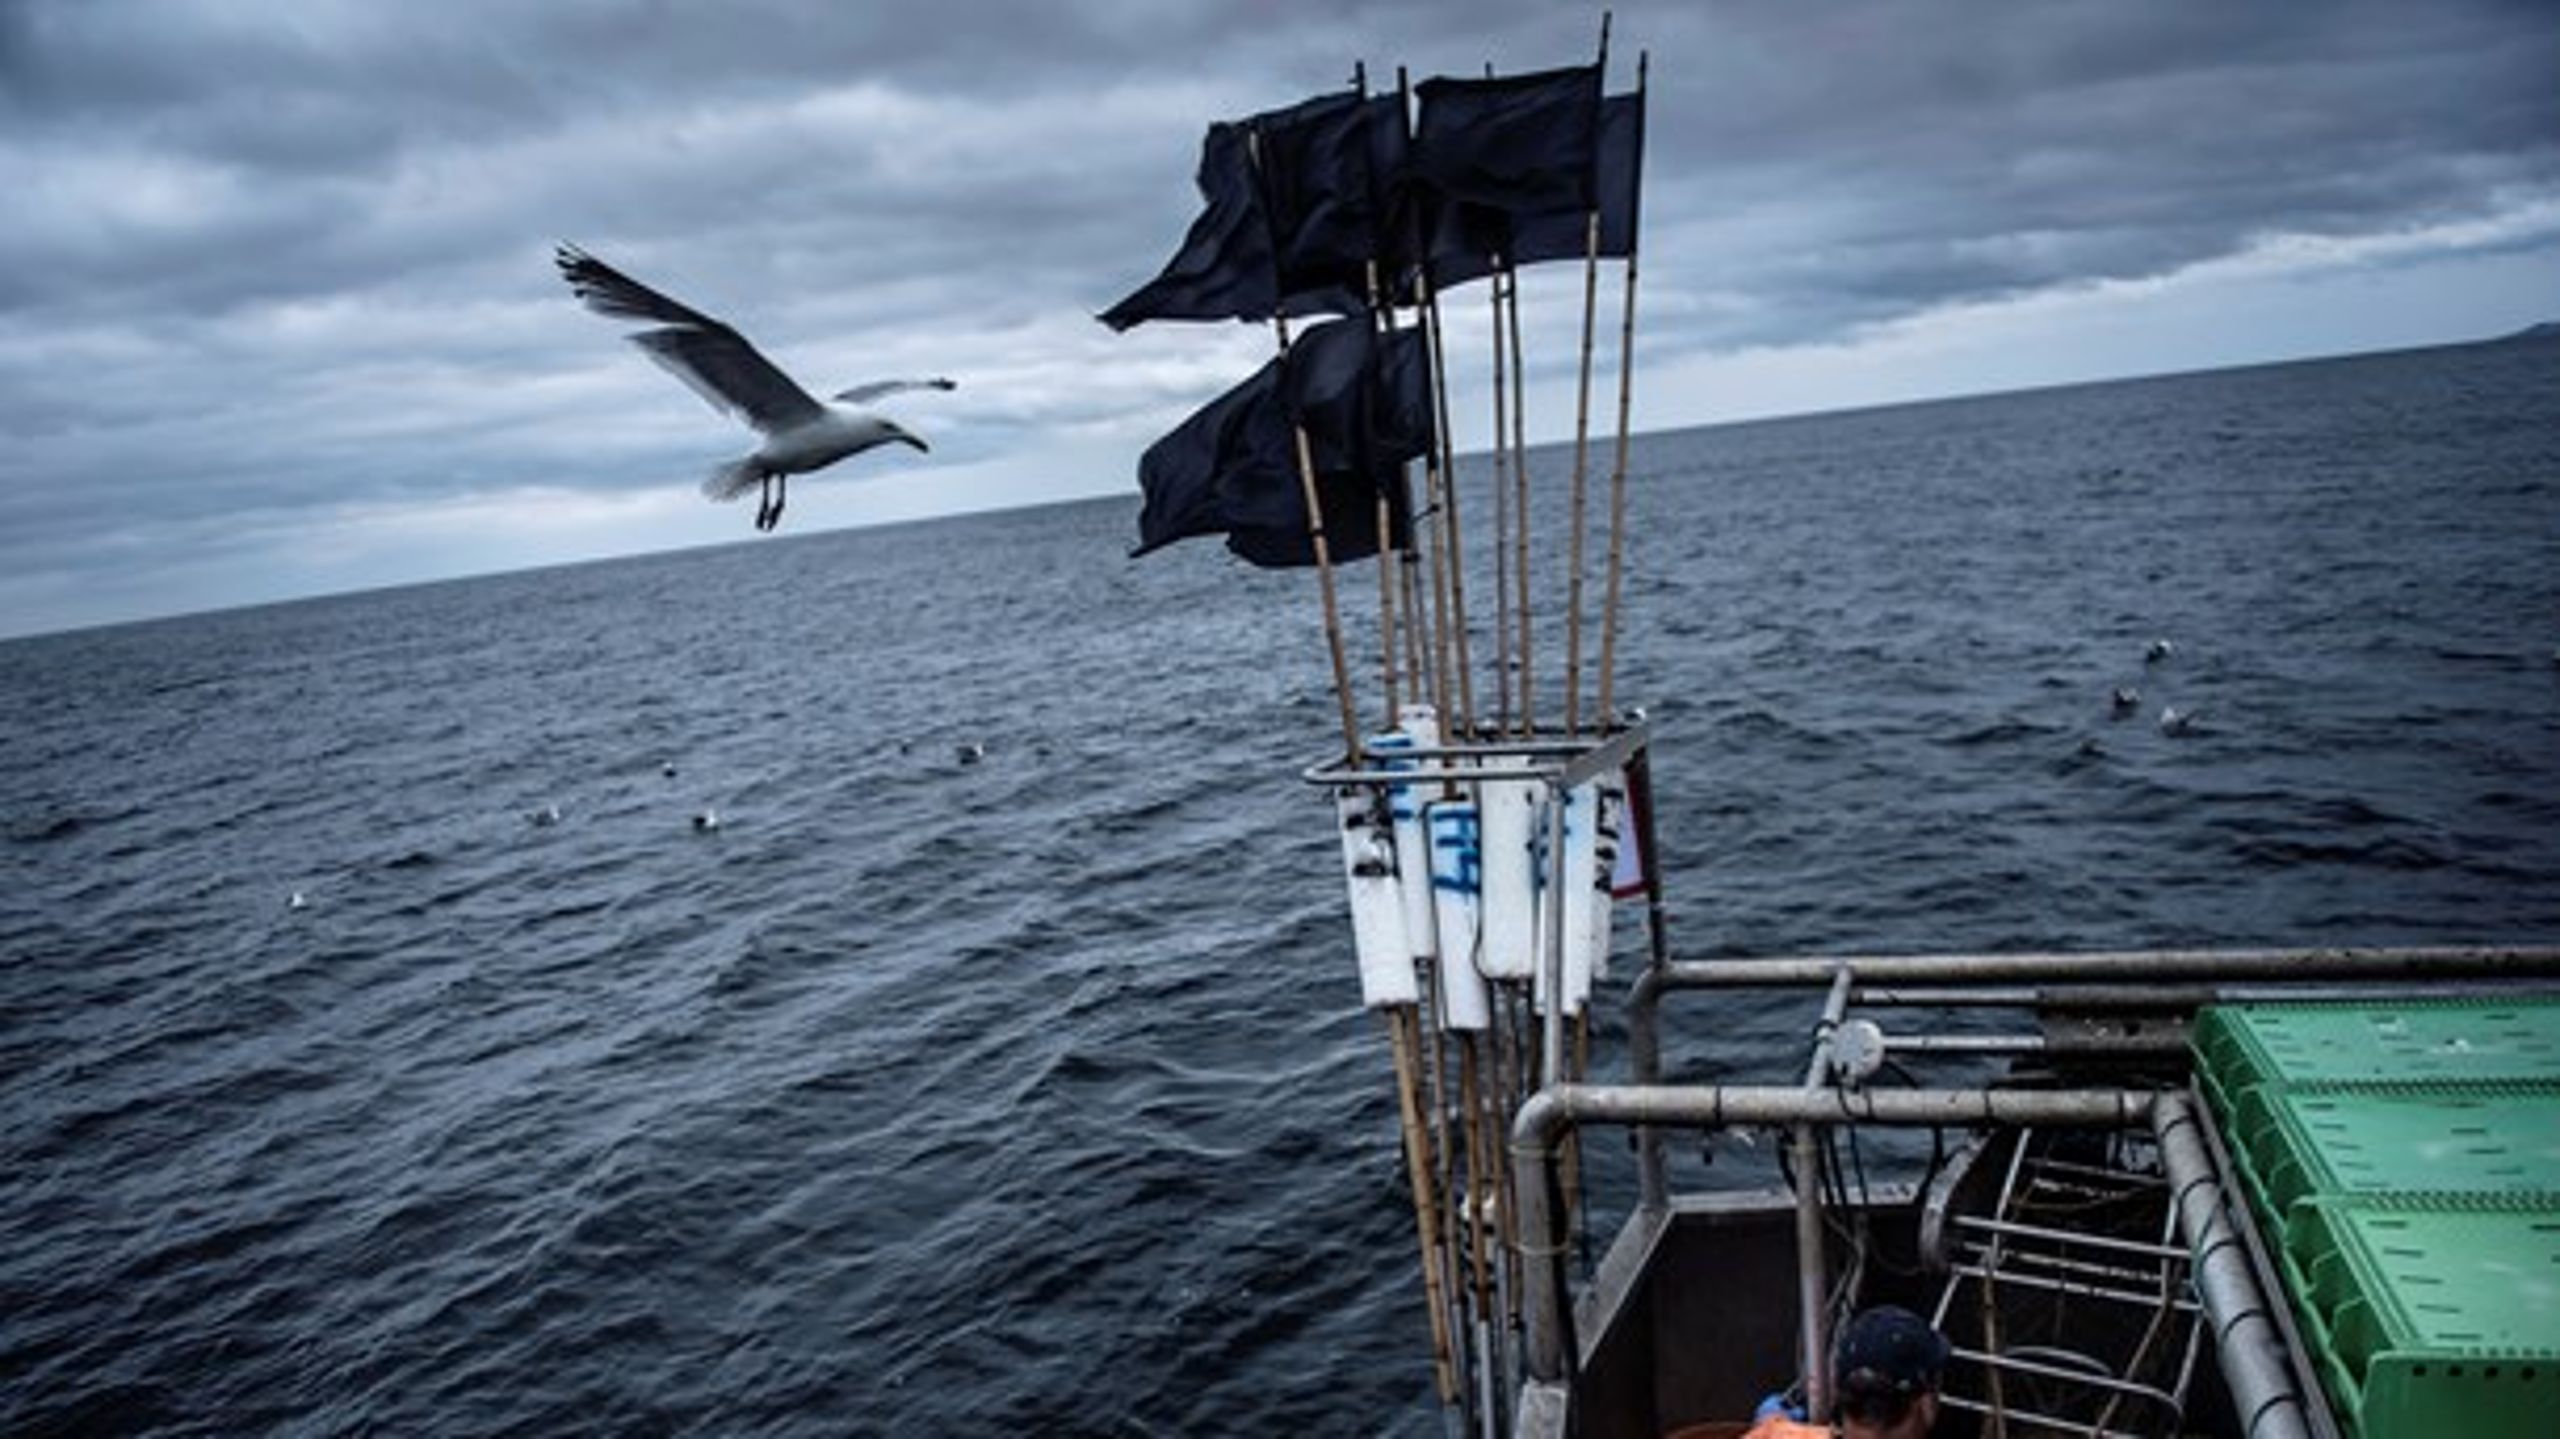 Enhedslisten vil afsætte 600 millioner kroner til en nødhjælpspakke til havet, der hvert år ødelægges af blandt andet trawlere, skriver Øjvind Vilsholm og Søren Egge Rasmussen.